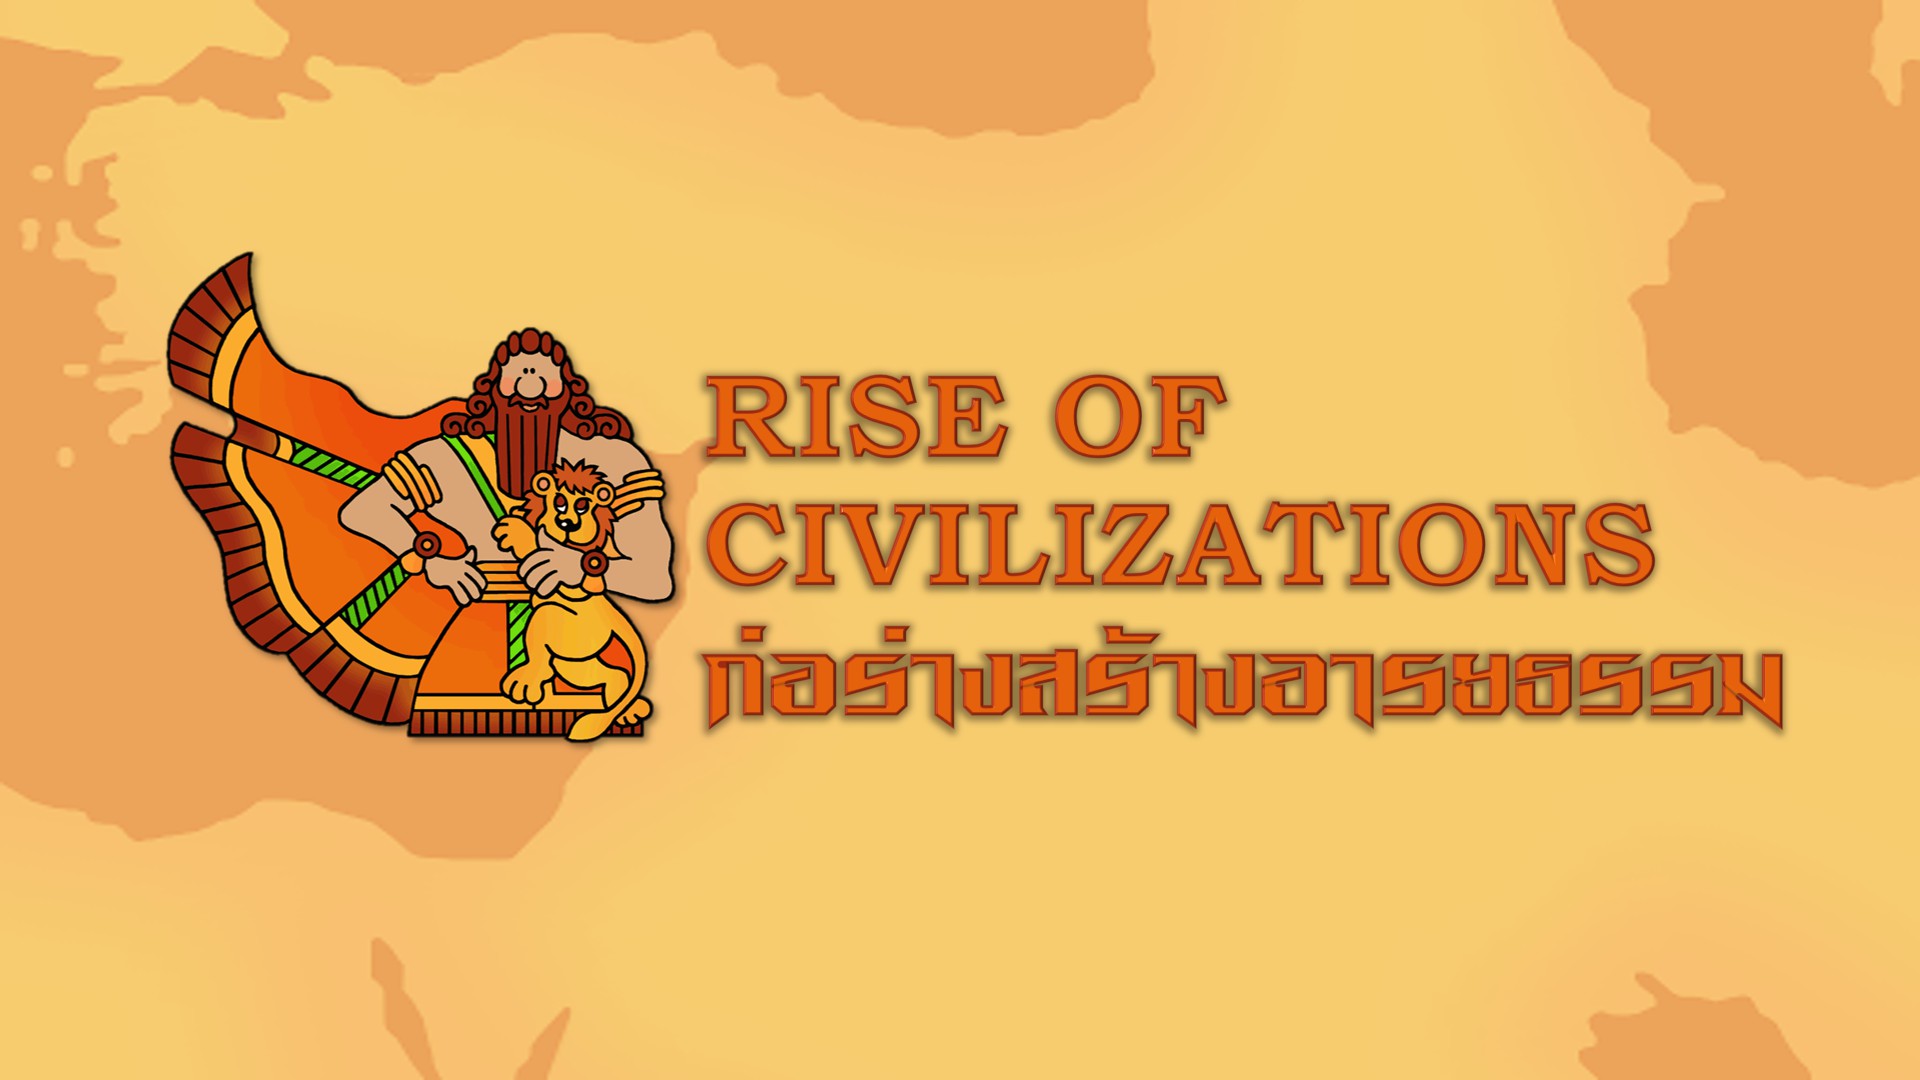 ภาพประกอบไอเดีย RISE OF CIVILIZATIONS ก่อร่างสร้างอารยธรรม